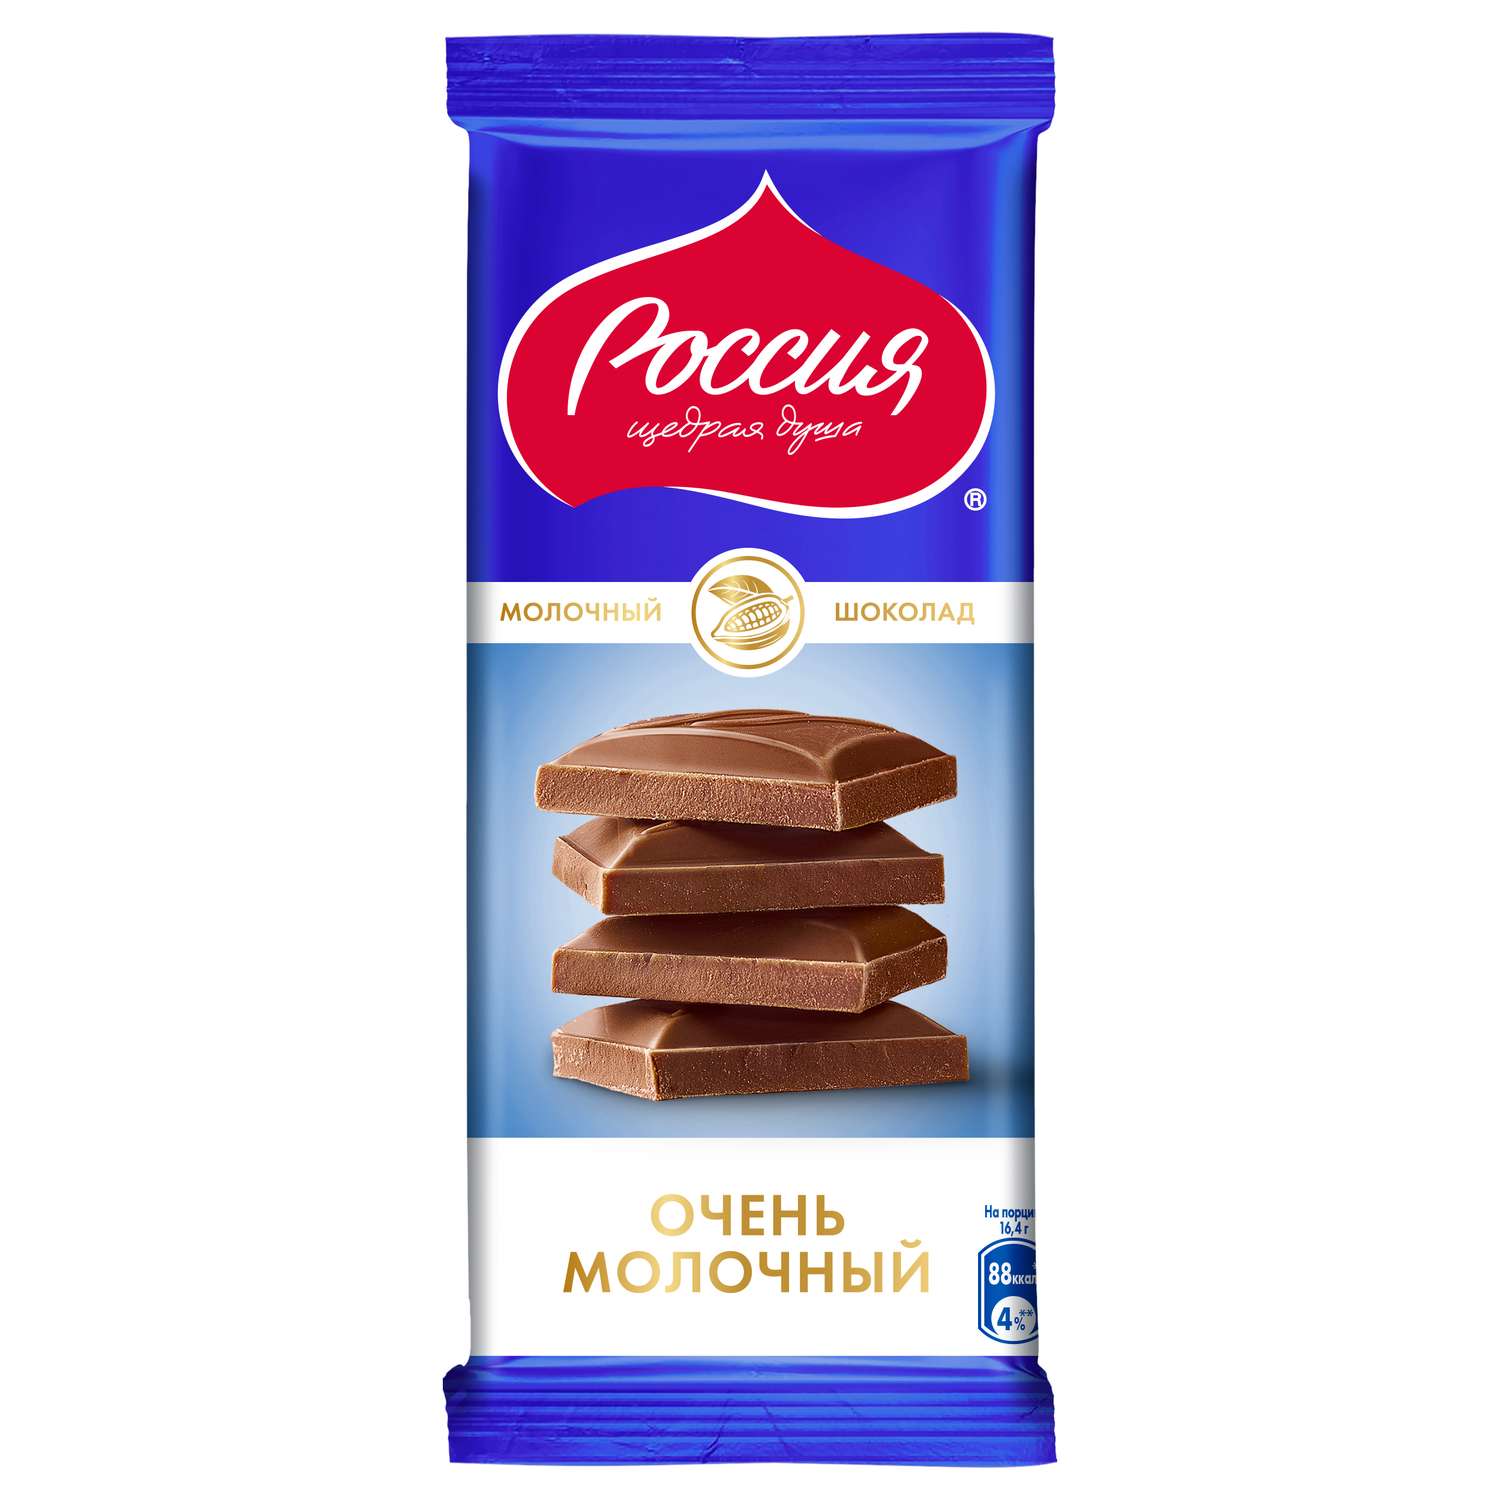 Шоколад Россия-щедрая душа! молочный 82г - фото 1